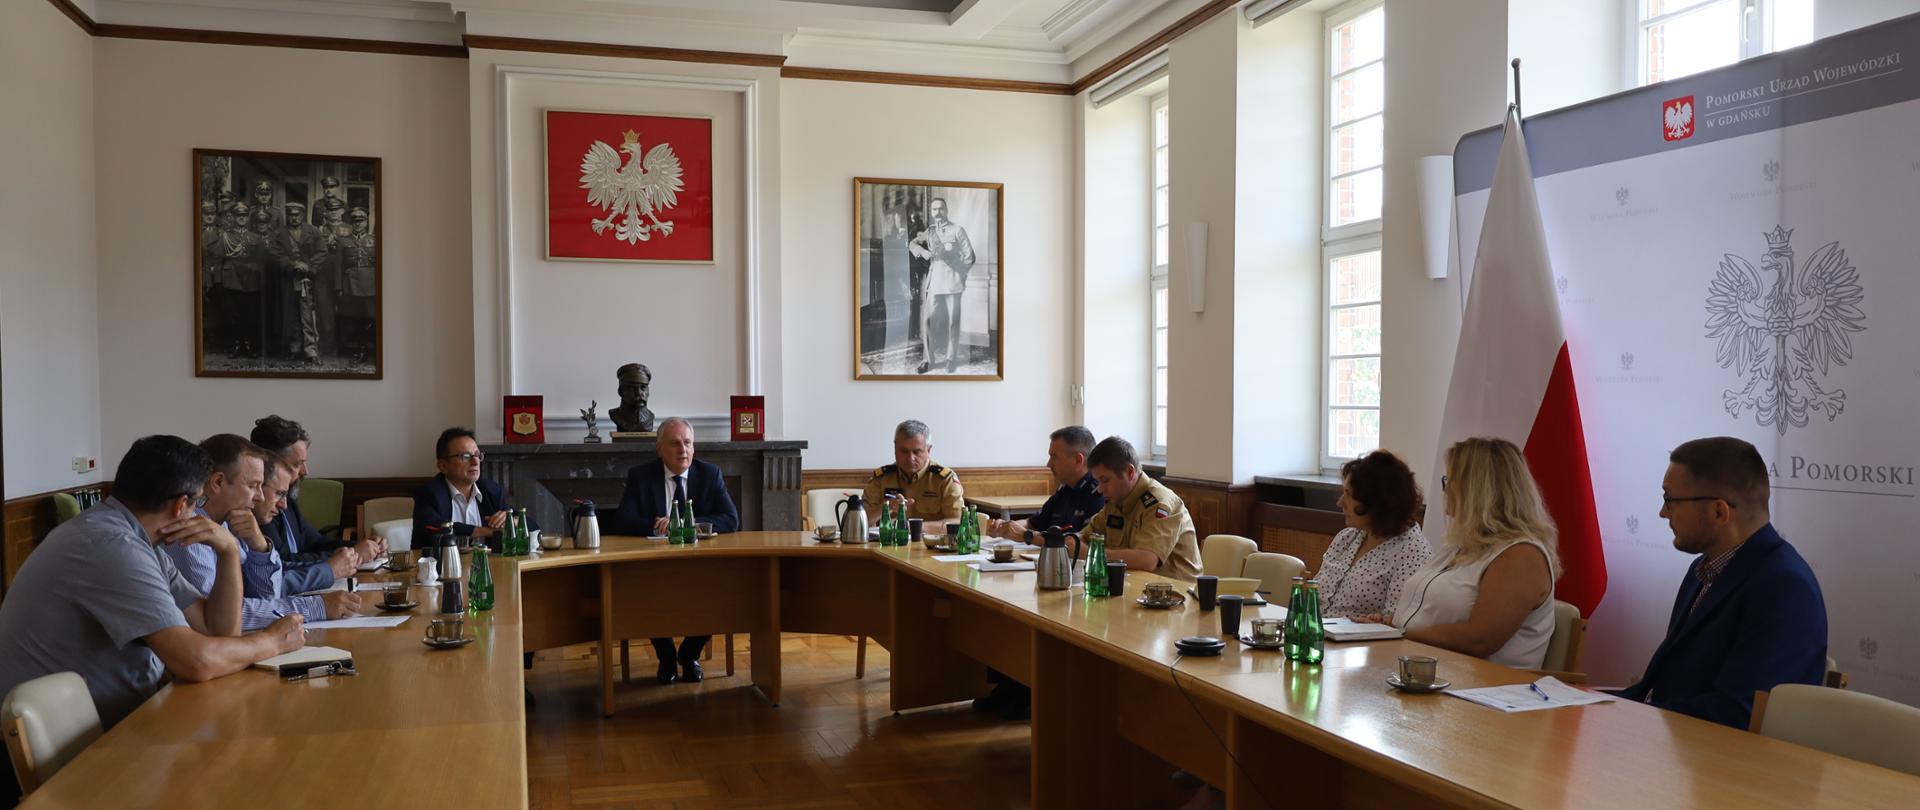 W sali przy podłużnym stole siedzą przedstawiciele służb mundurowych oraz władz szczebla wojewódzkiego.